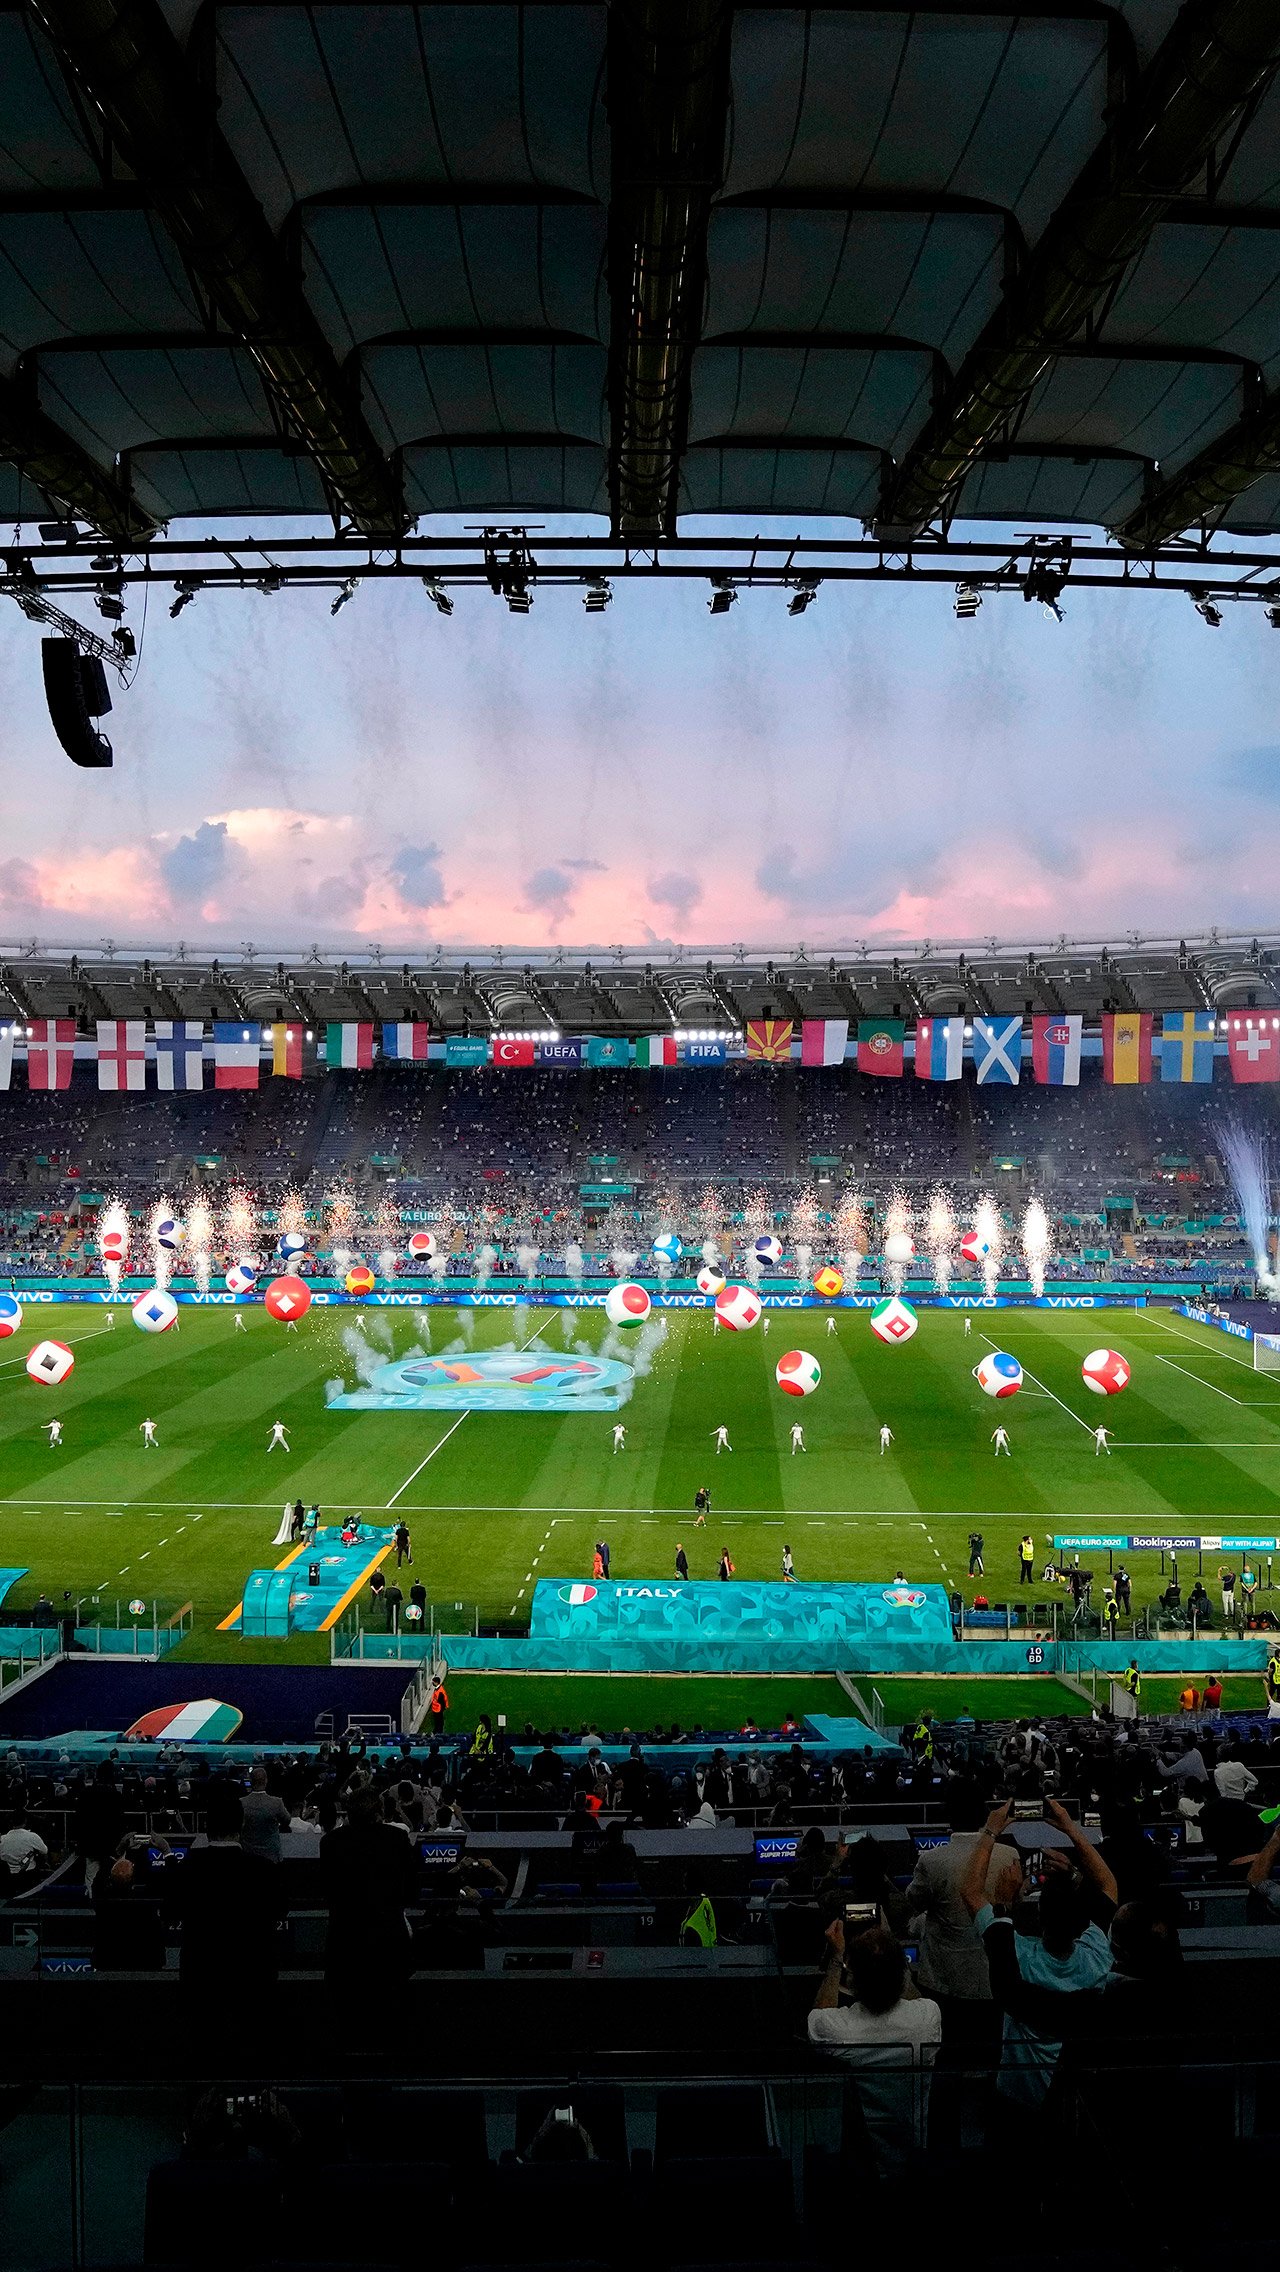 Турнир открылся лаконичной церемонией. Каждый шар — флаг страны-участницы чемпионата Европы.